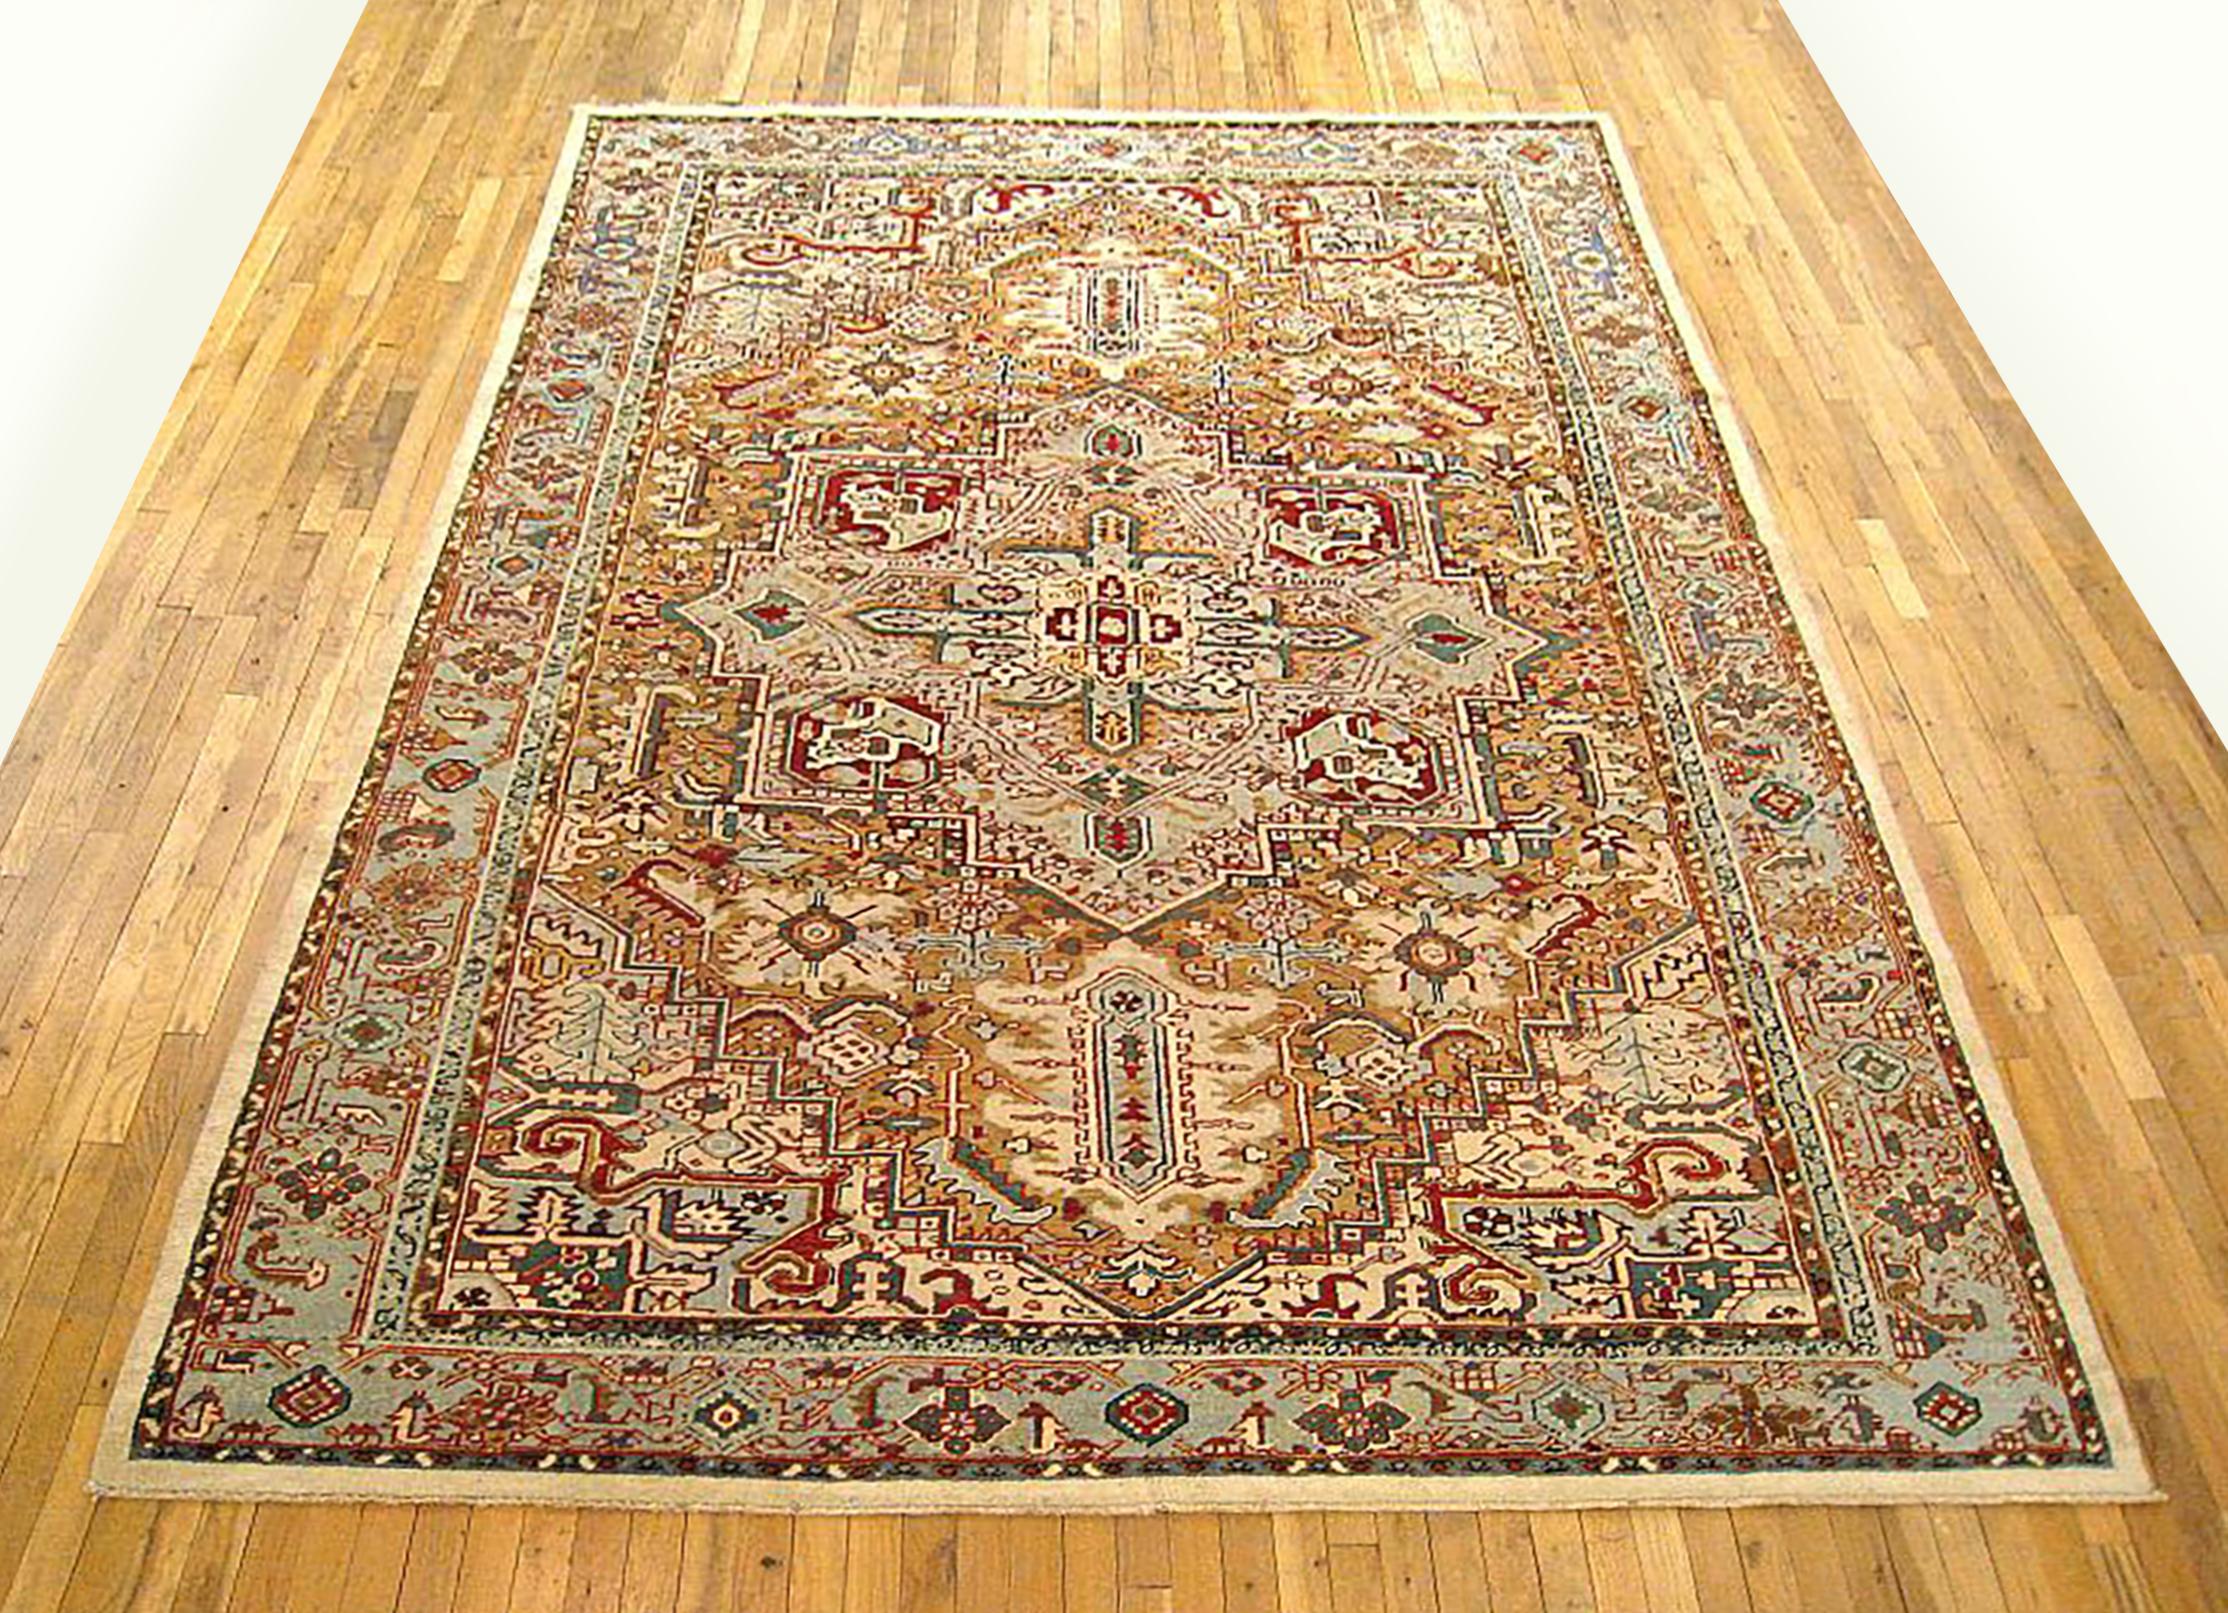 Antique Persian Heriz Oriental rug, Room size

An antique Persian Heriz oriental rug, size 11'3